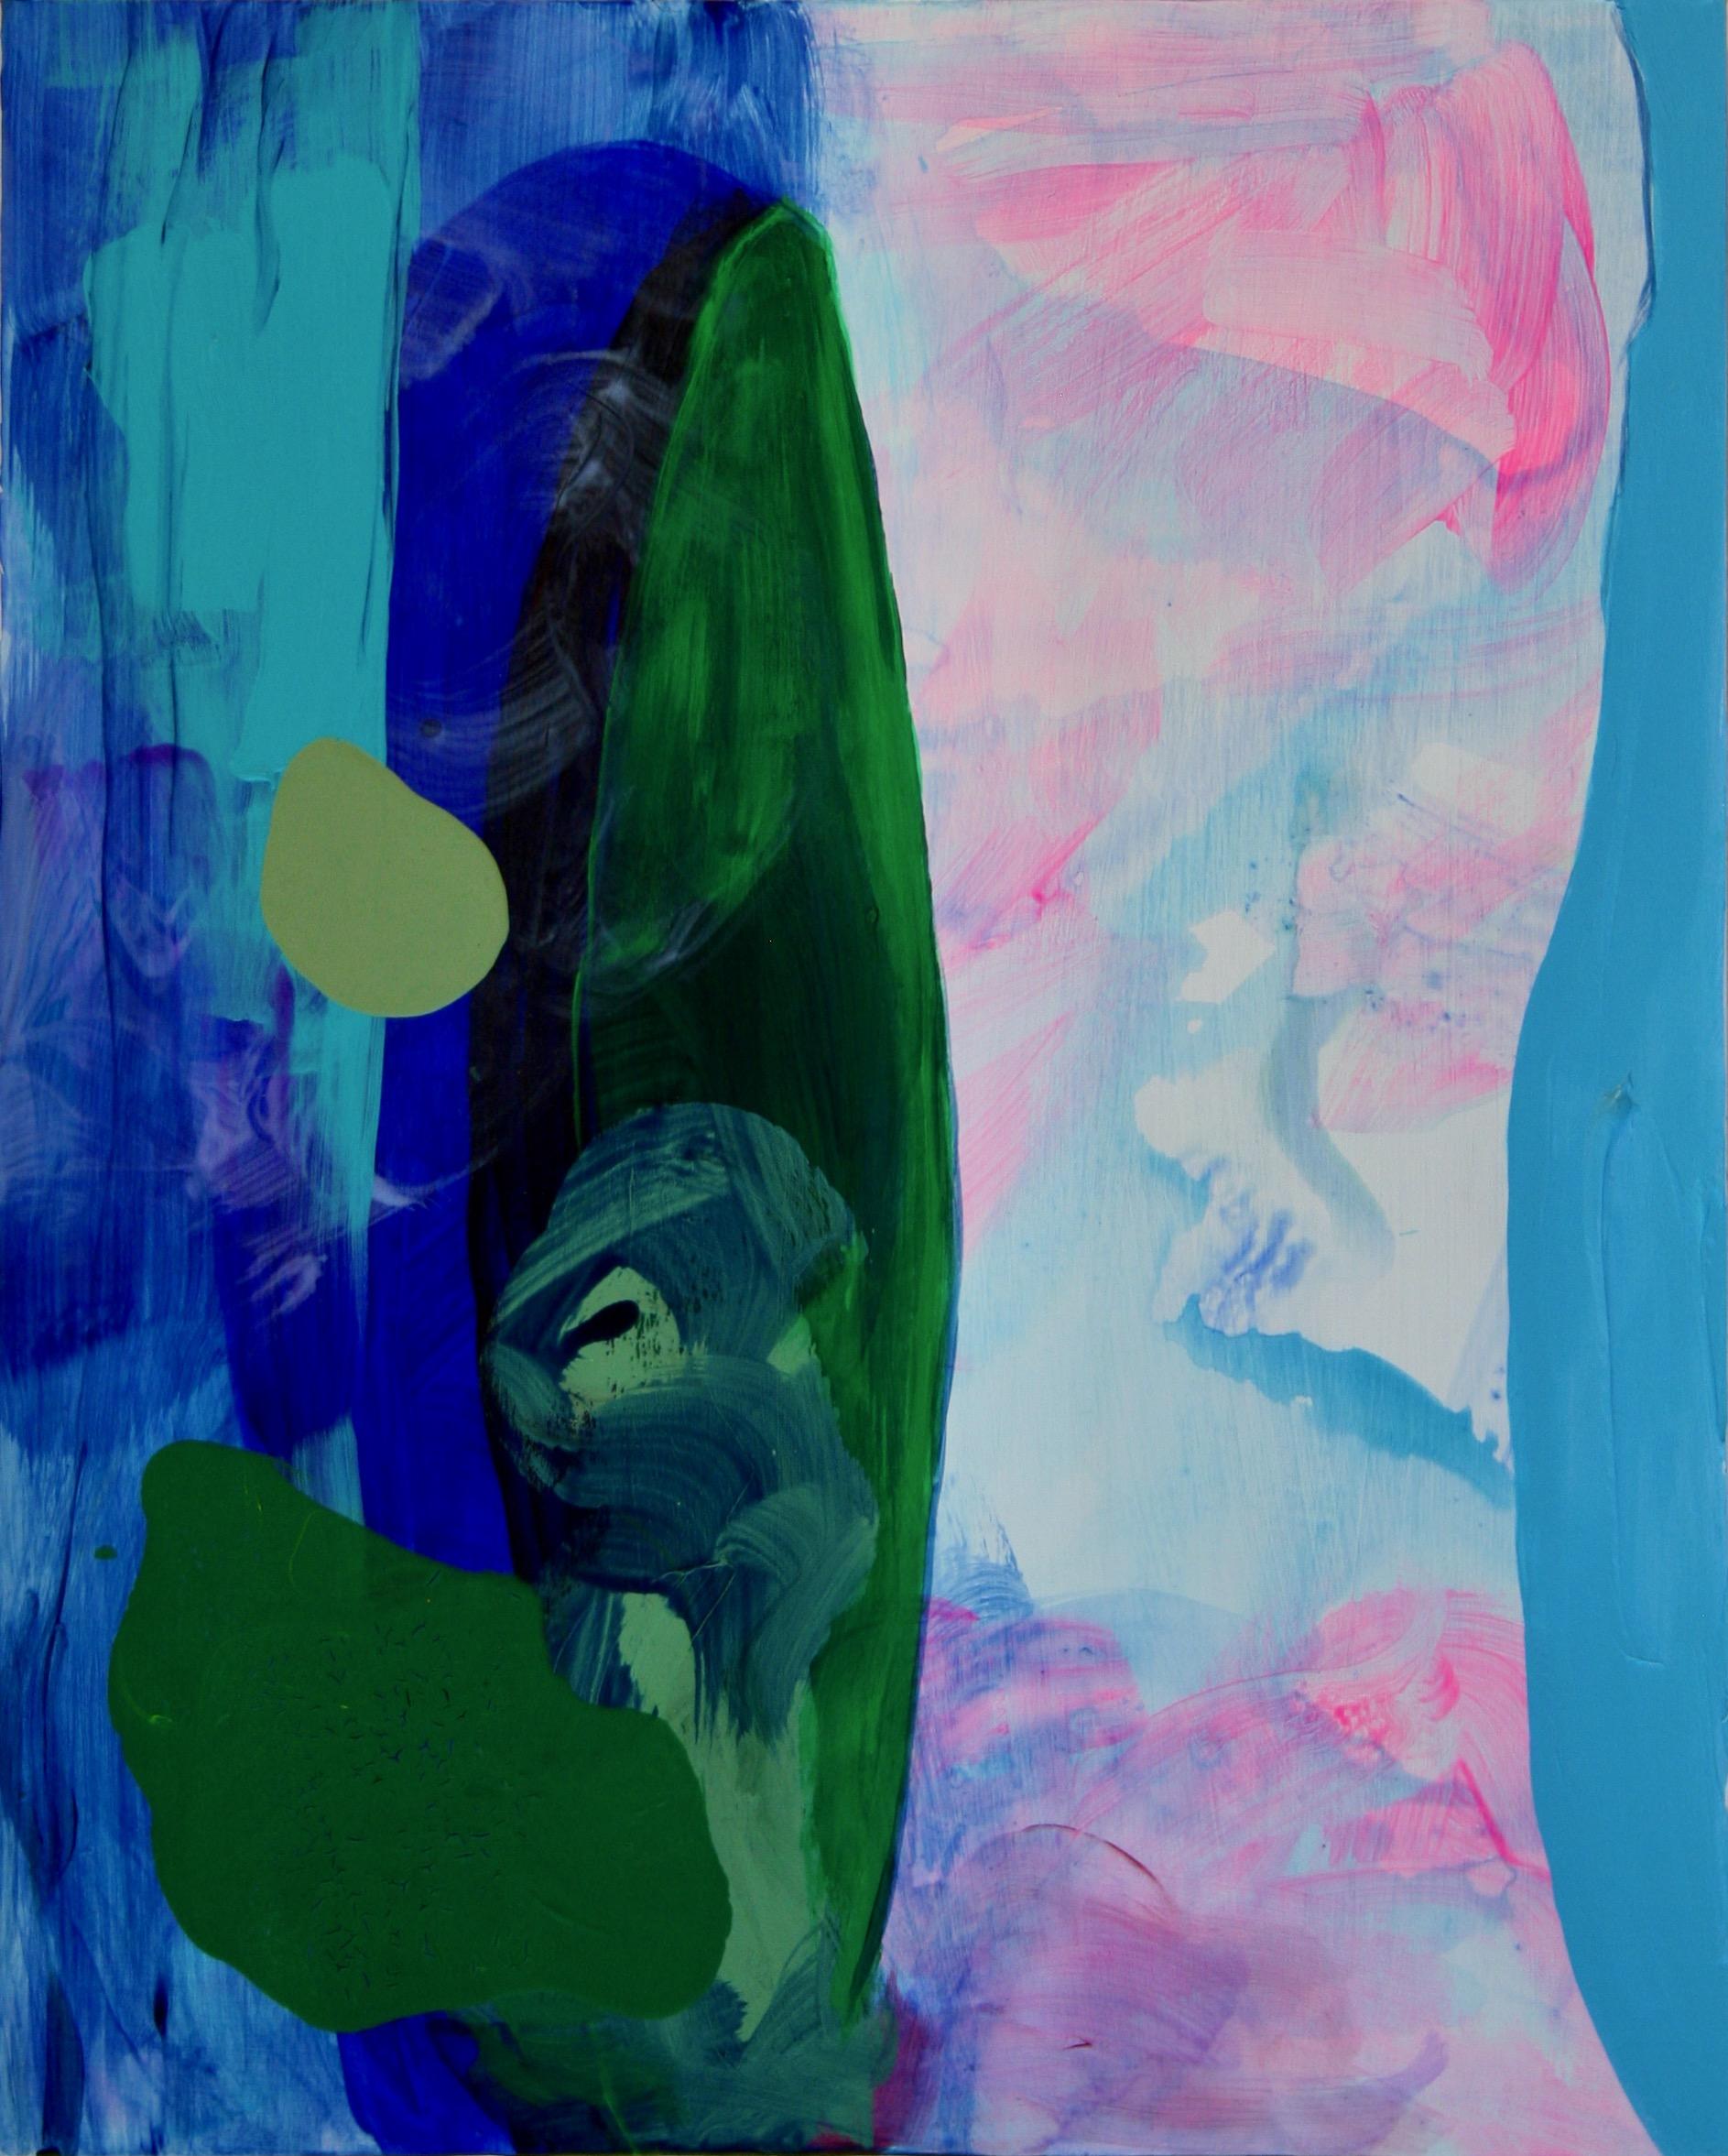 Zeitgenössisches abstraktes Gemälde, "Verdant Shield"" (mit grünem, türkisfarbenem und blauem Schild